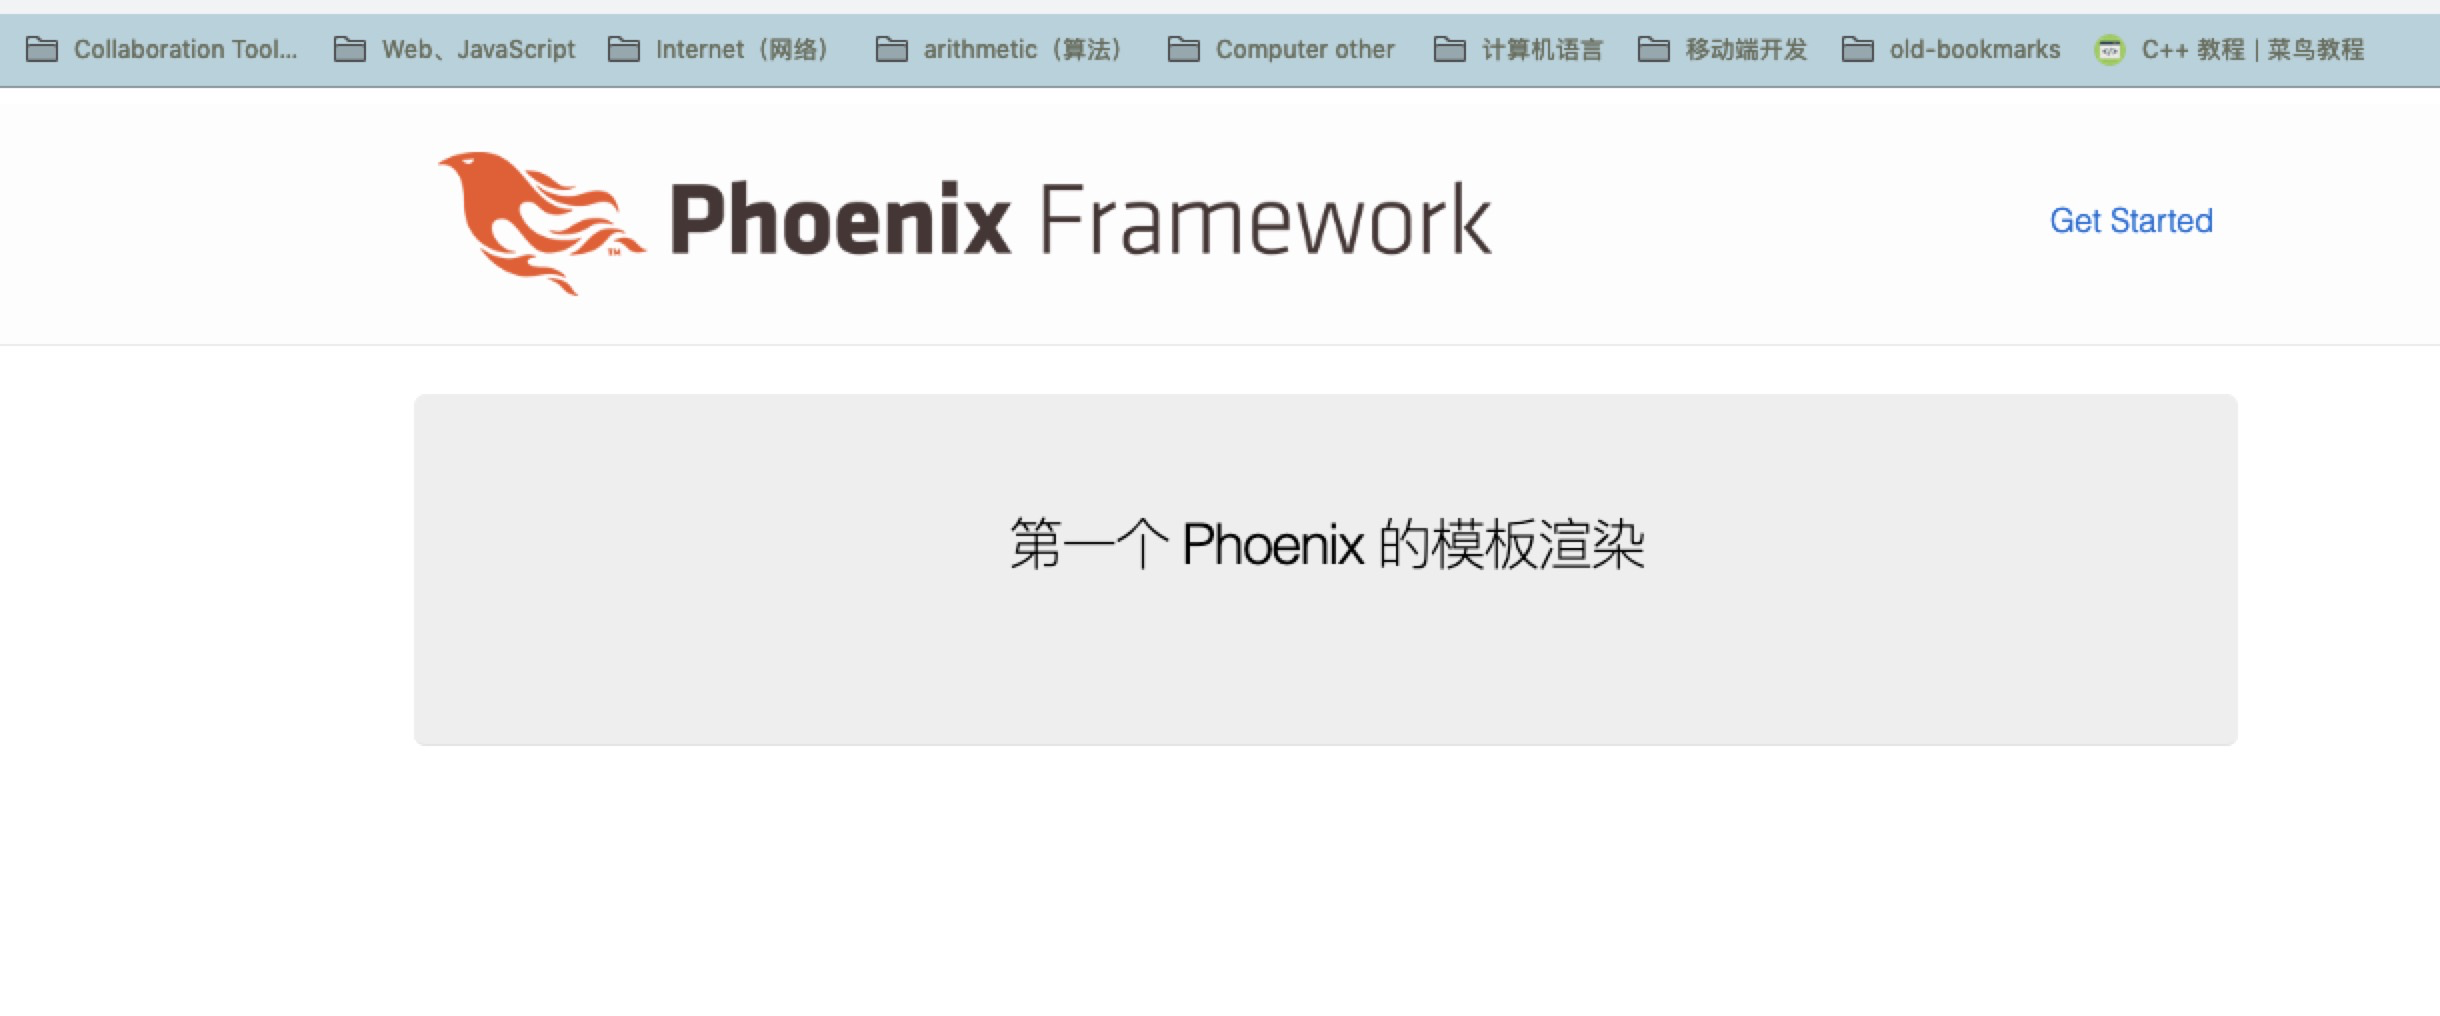 【Phoenix】2、初始化 Phoenix 项目后的 目录结构第1张